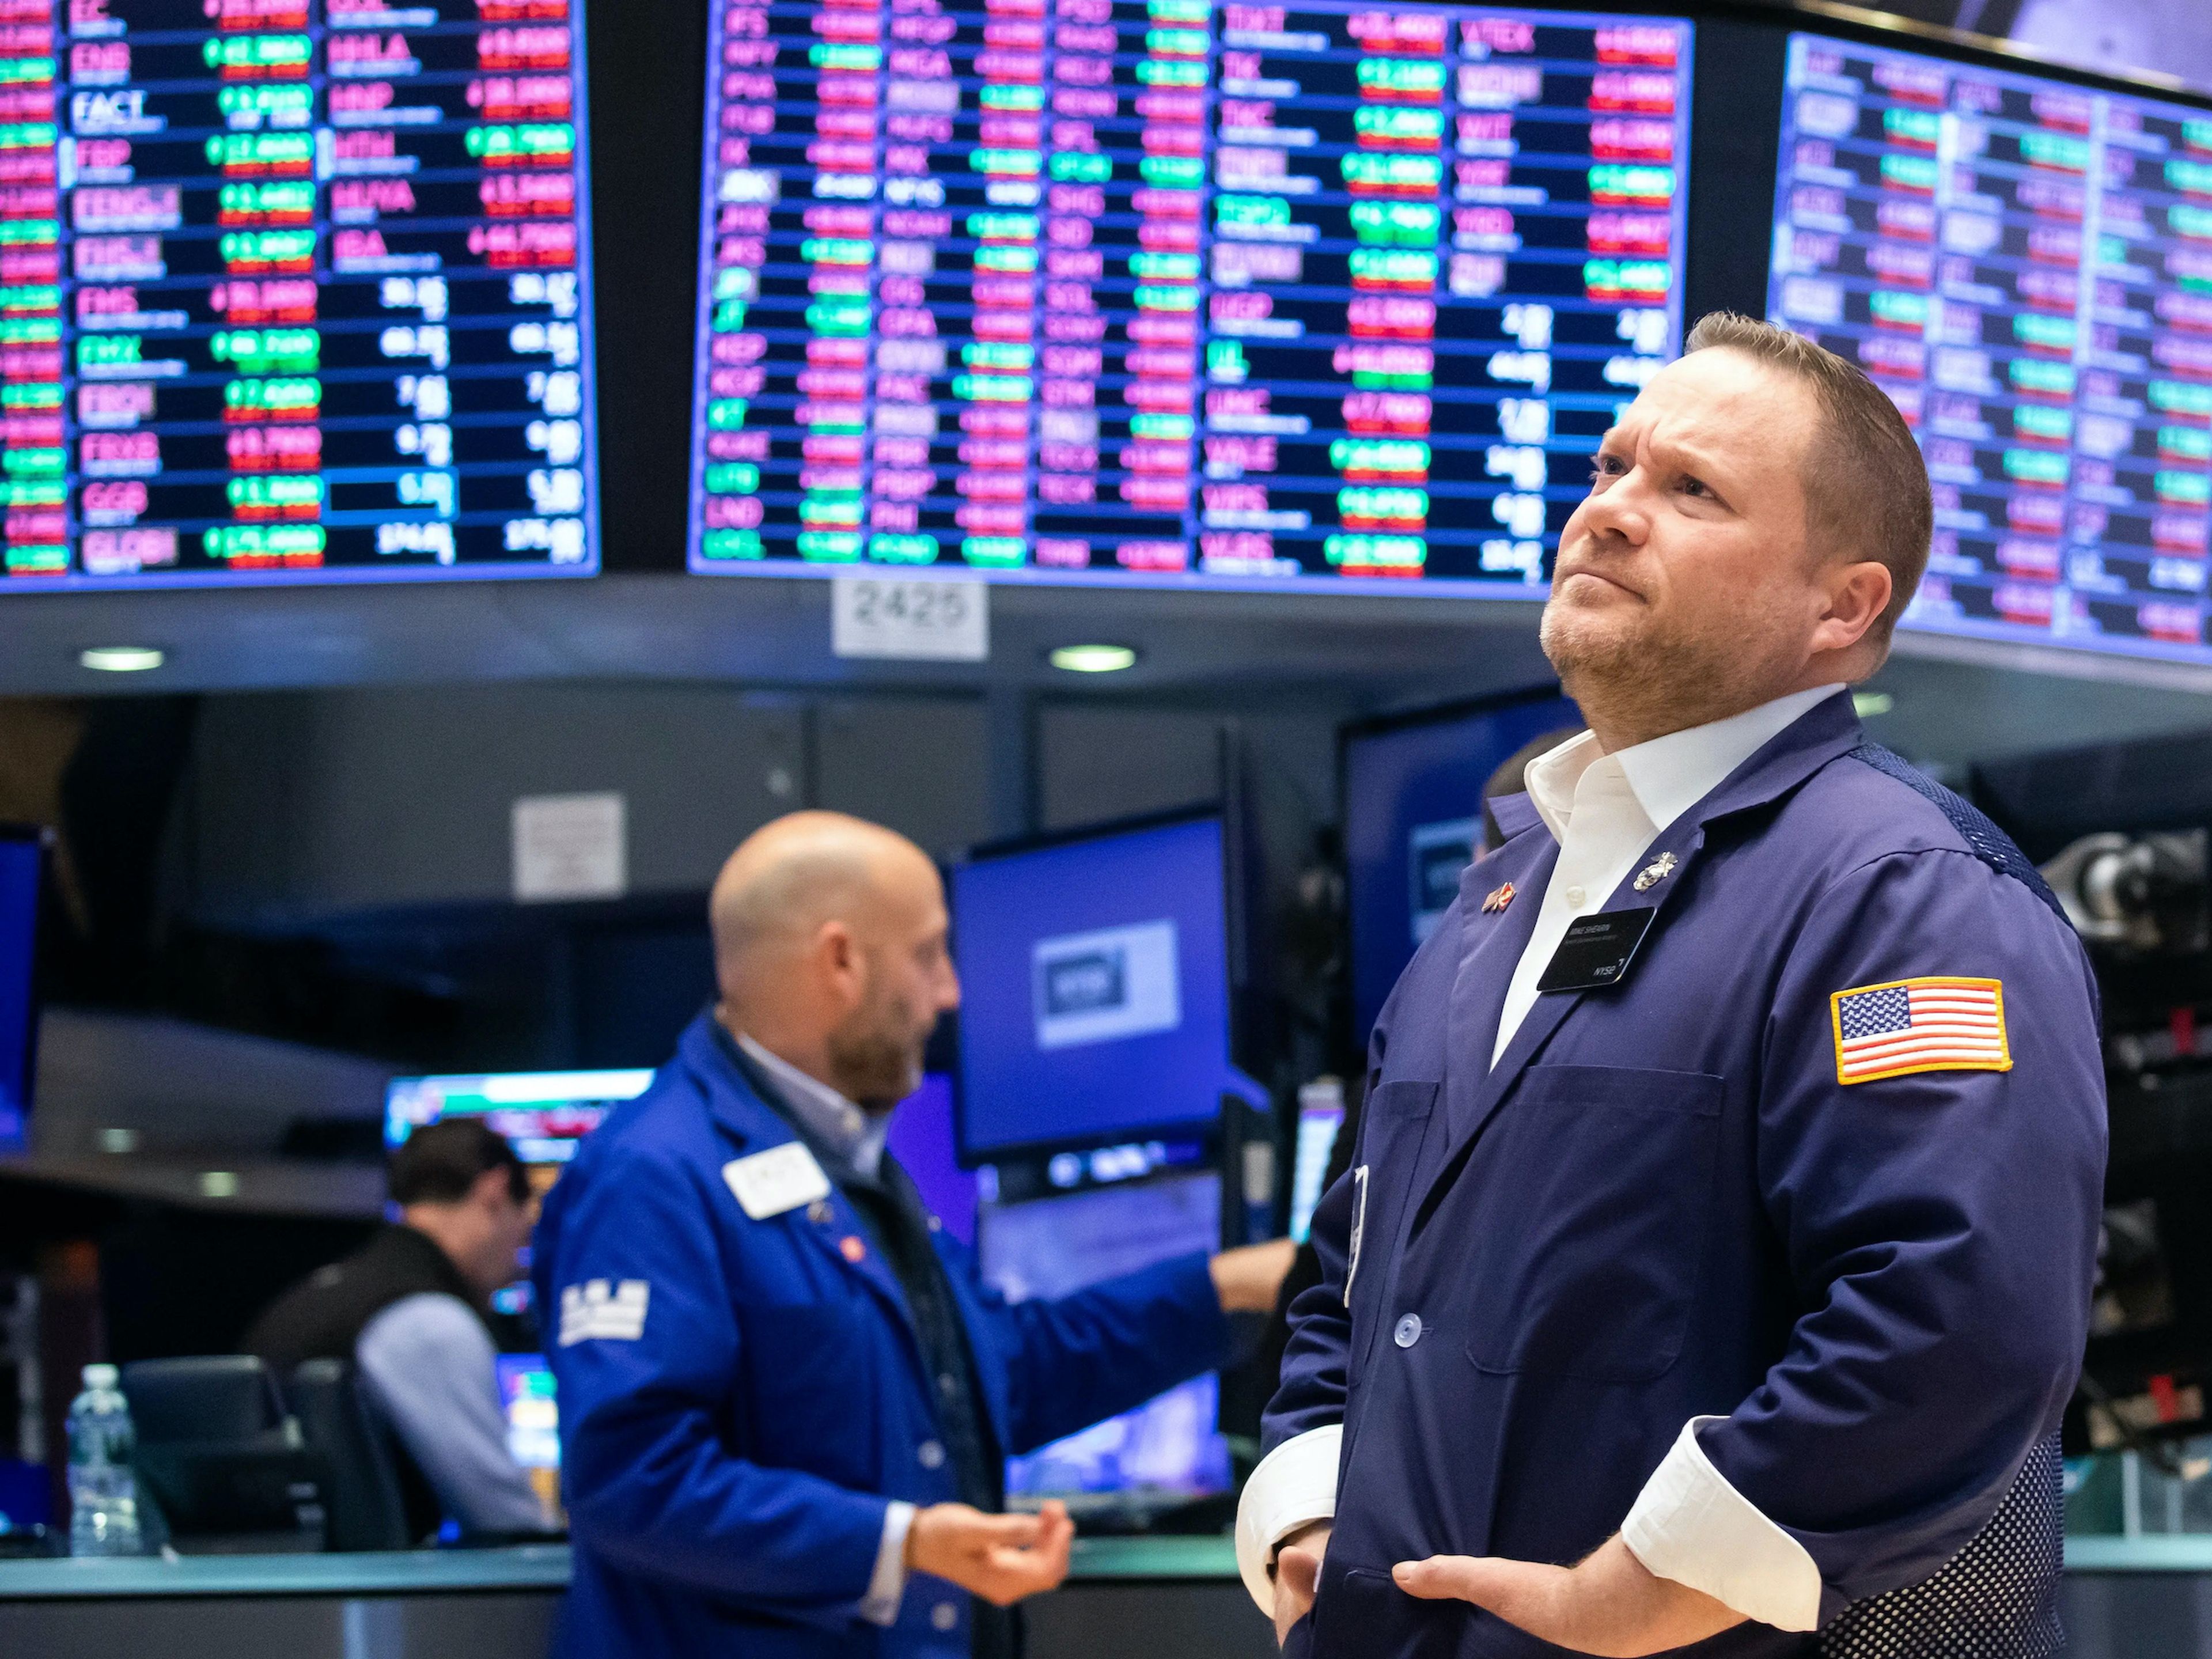 Una gran pantalla con los precios de las acciones aparece detrás de los operadores que trabajan en la Bolsa de Nueva York, el 9 de mayo de 2022. 